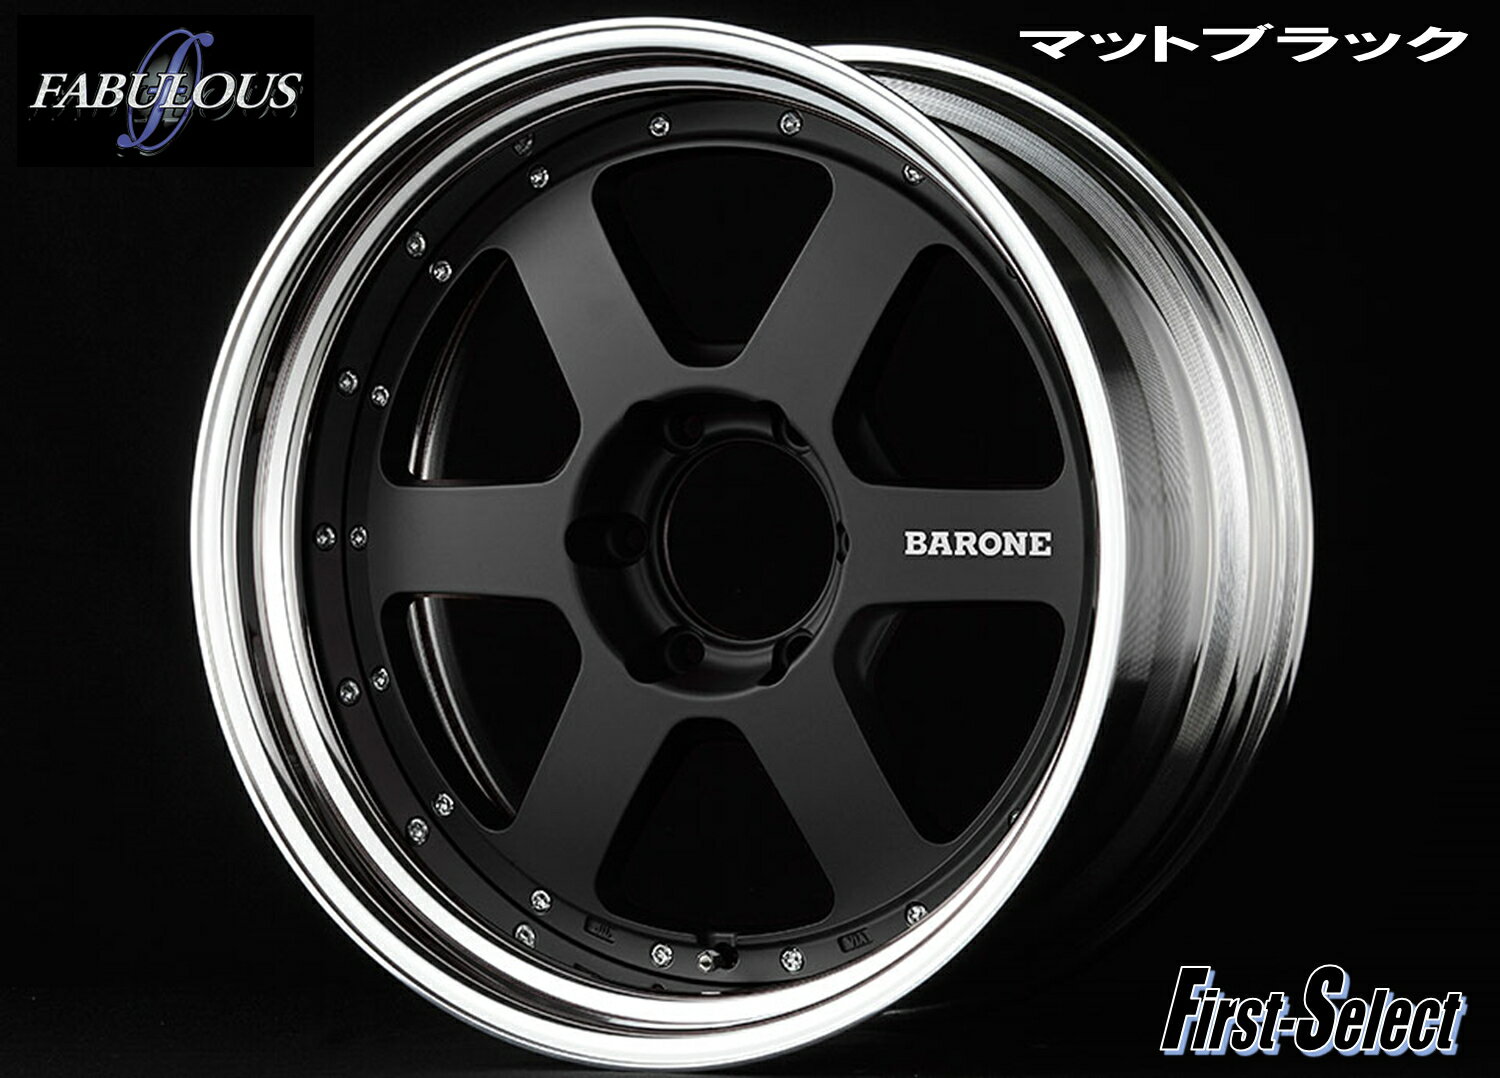 200系 ハイエース 深リム カスタムサイズFABULOUS BARONE RS-6 2Pマットブラック18×9.0J 6H139.7+25特選輸入タイヤ18インチ 新品 タイヤ・ホイール